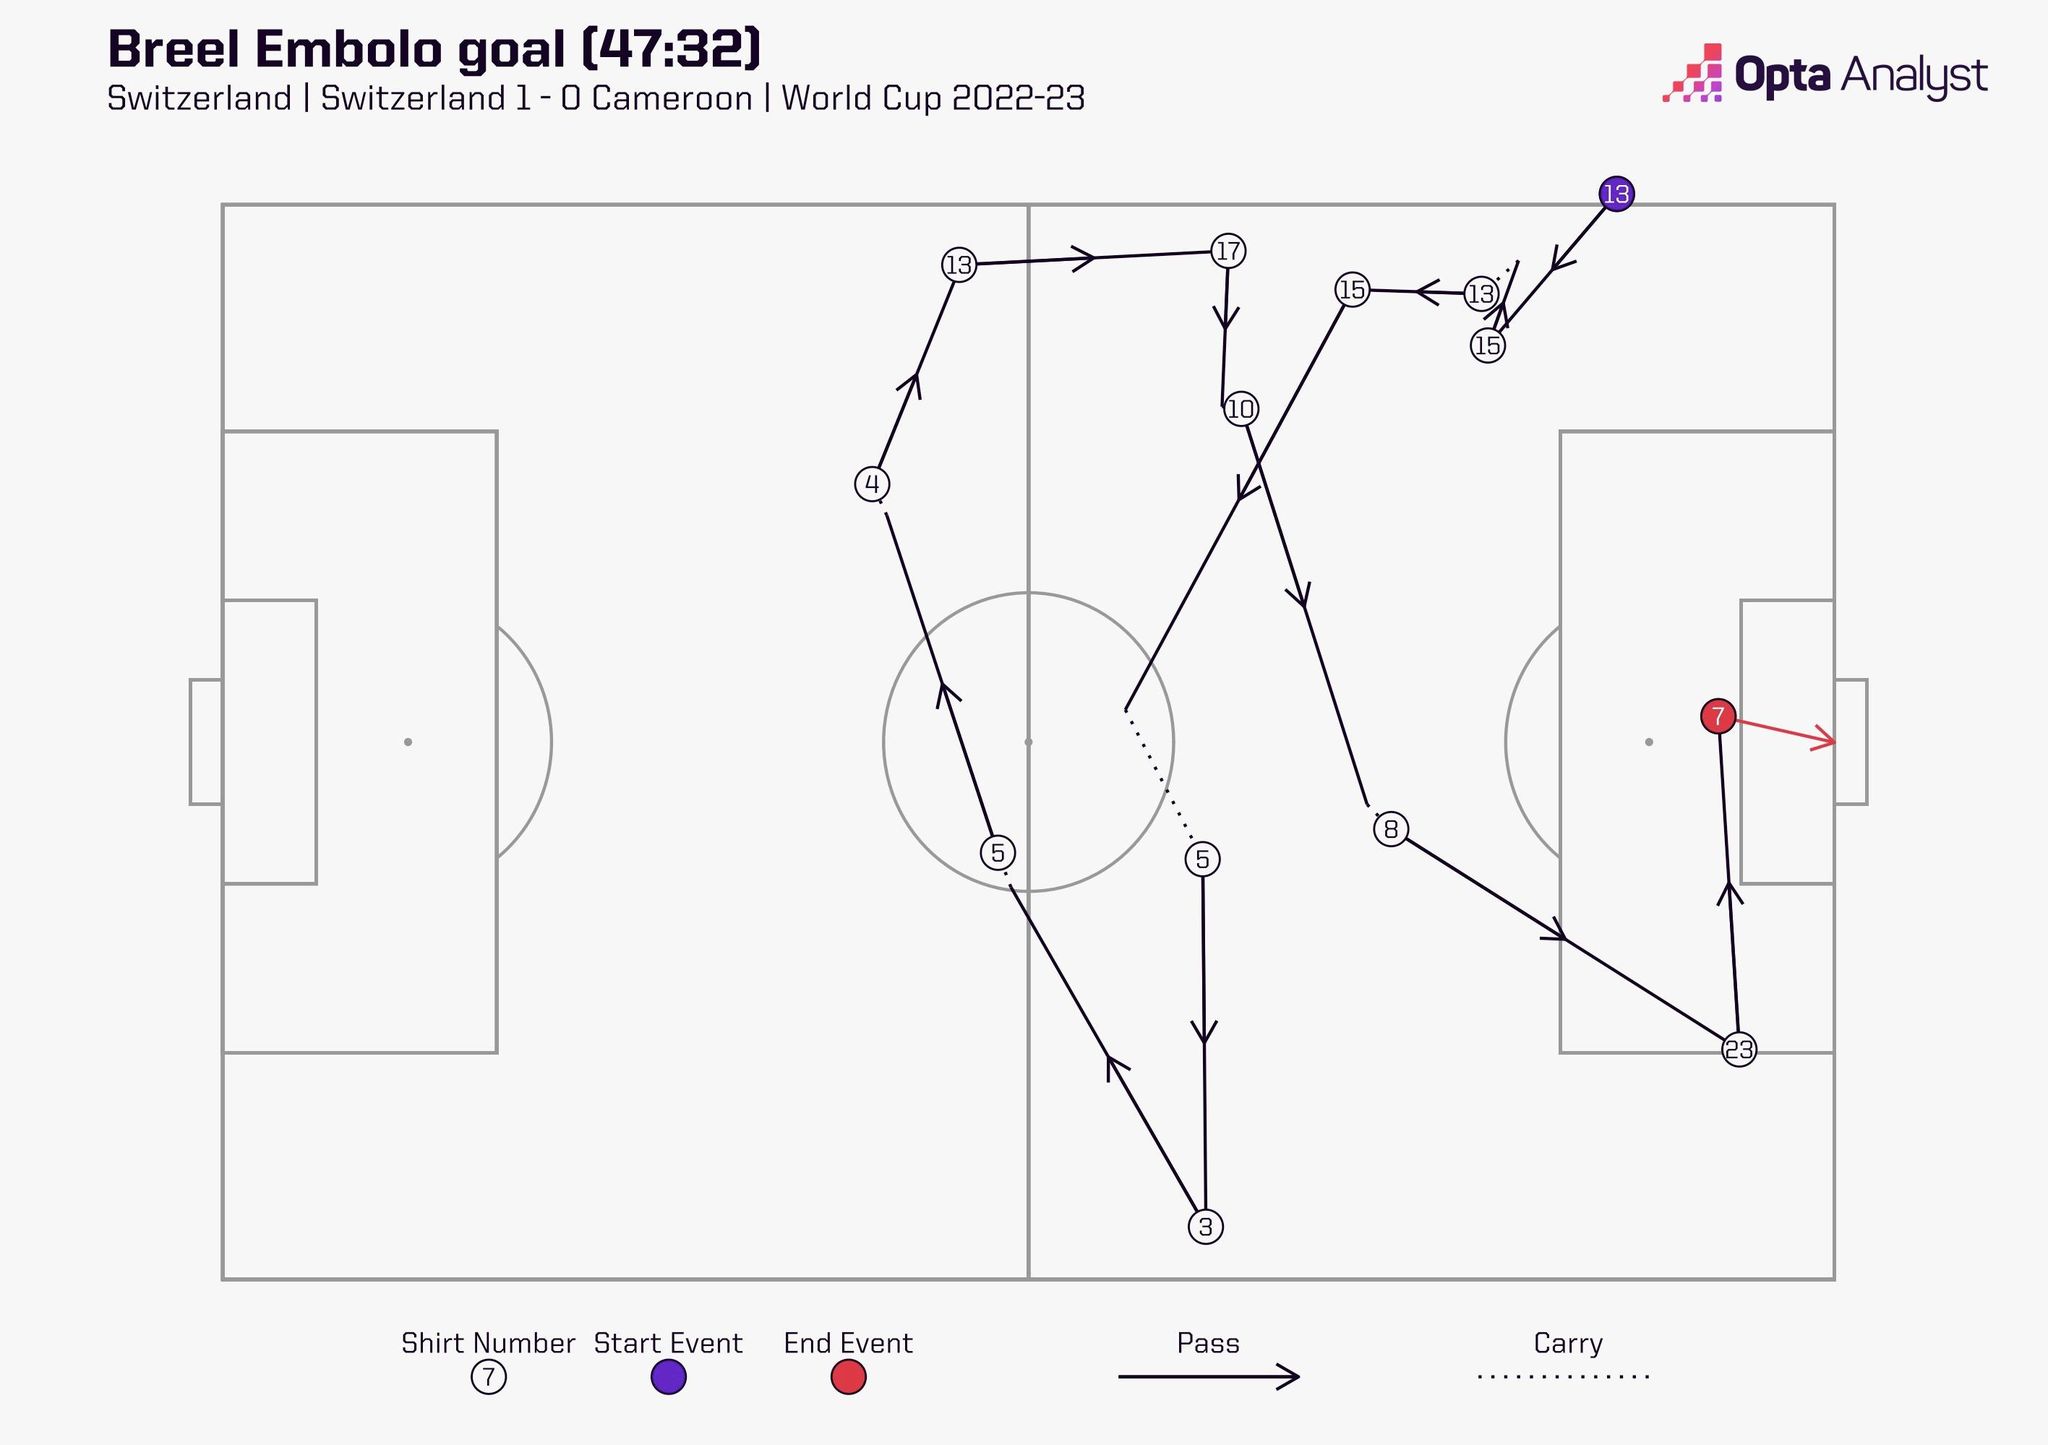 Thụy Sĩ 1-0 Cameroon Embolo, Shaqiri và câu chuyện về một bàn thắng đặc biệt 1